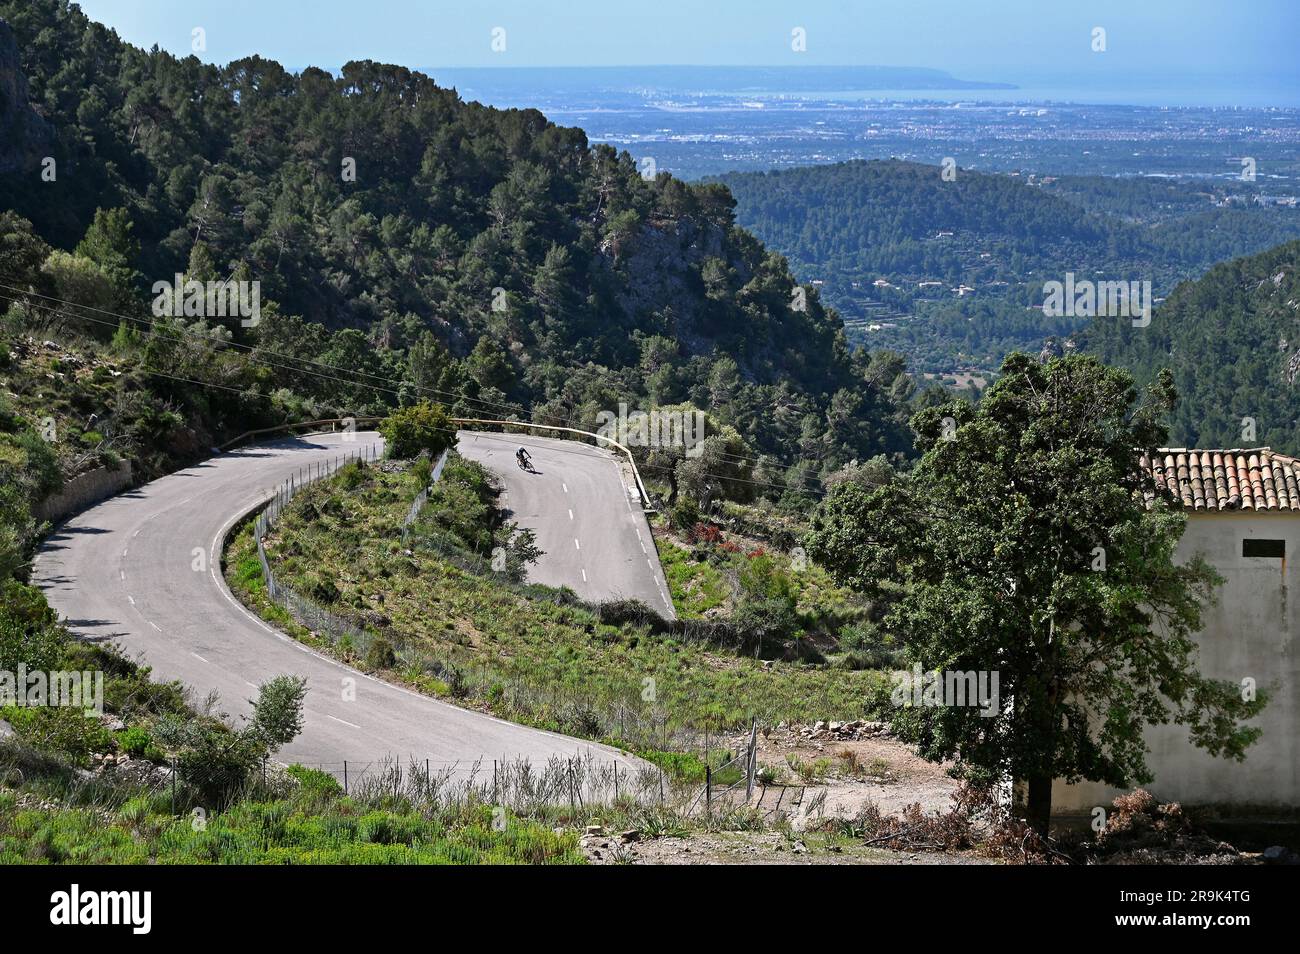 Cycliste sur le Coll de Soller dans les montagnes Tramuntana, Majorque, Espagne Banque D'Images